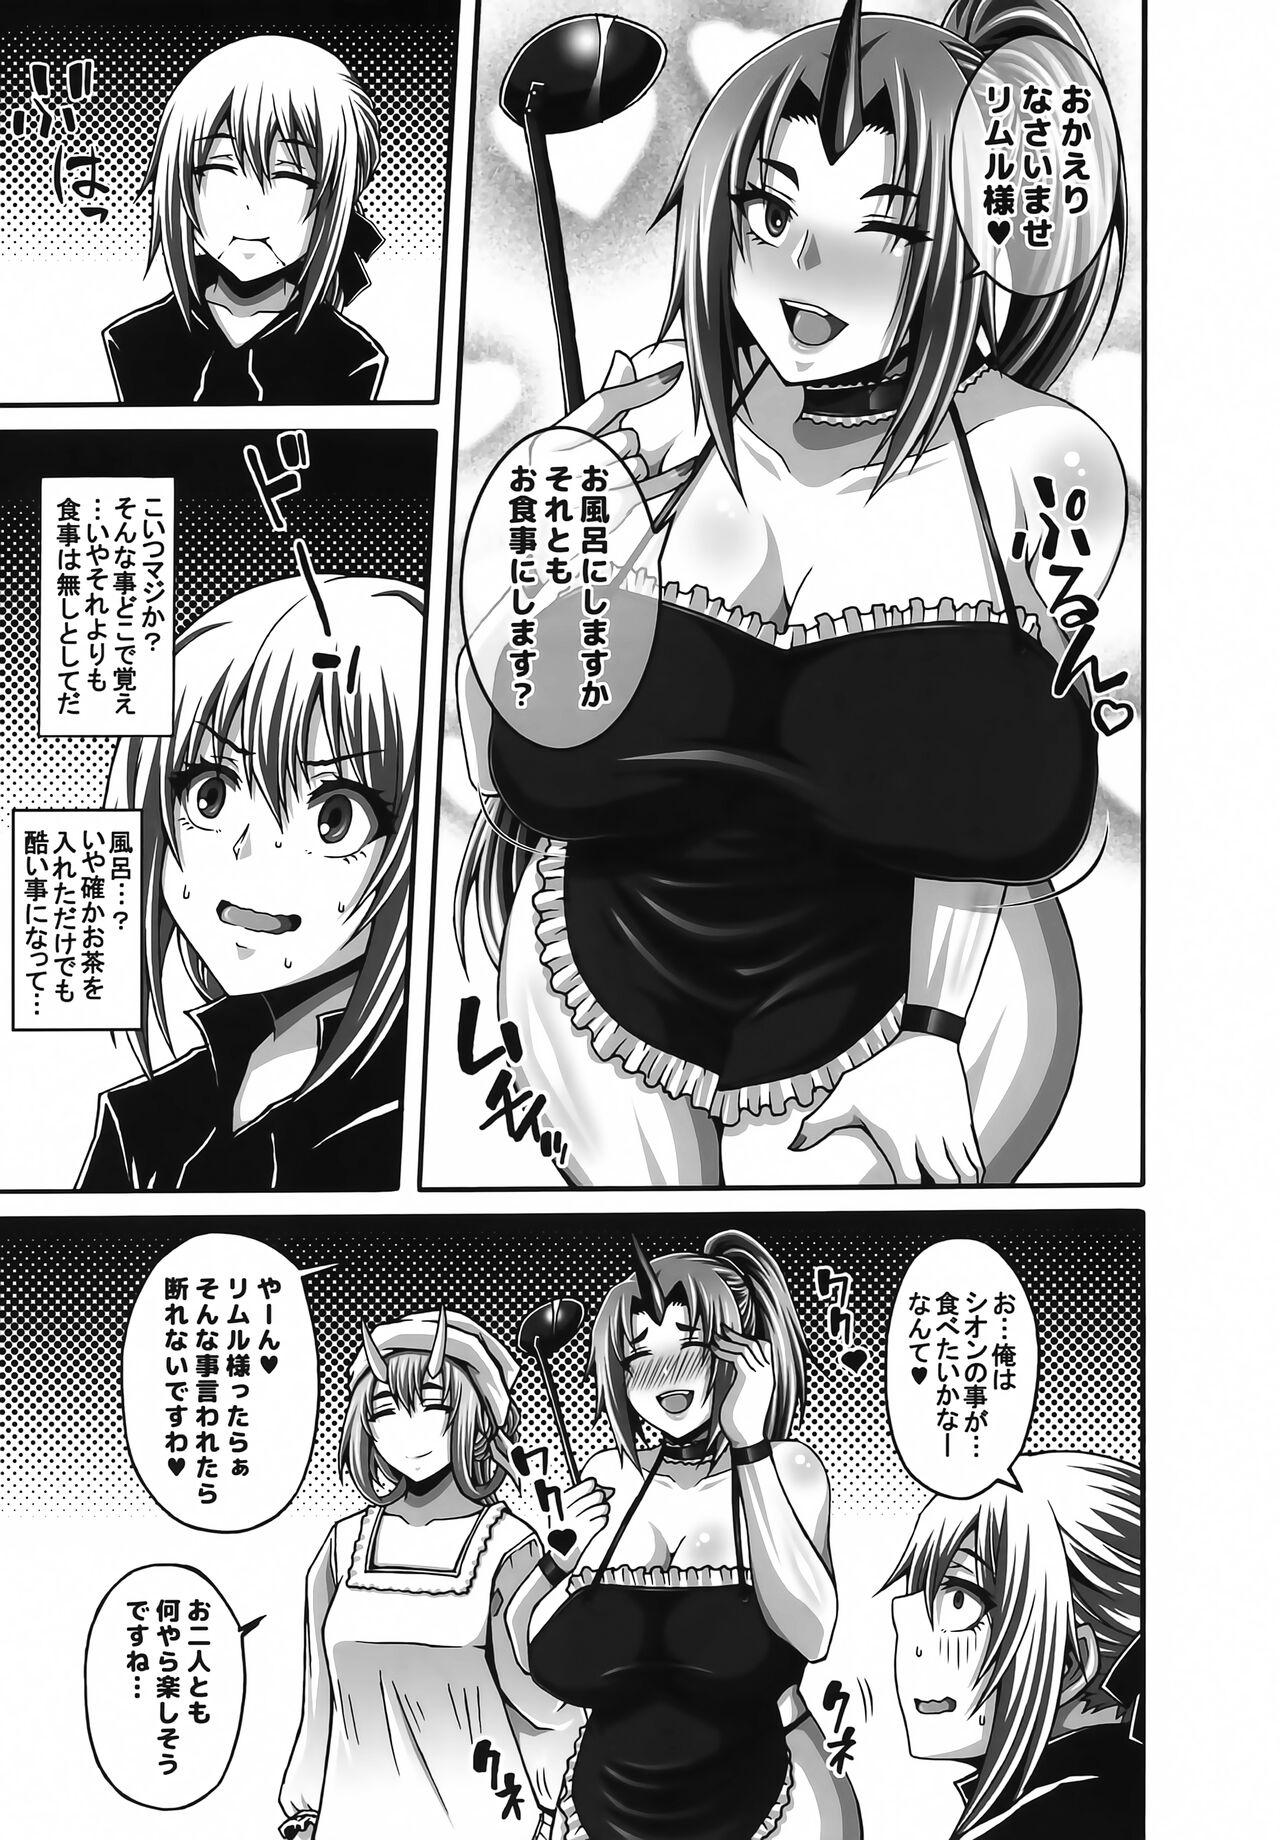 Women Sucking Tensei Harem Nikki 3 - Tensei shitara slime datta ken Booty - Page 2